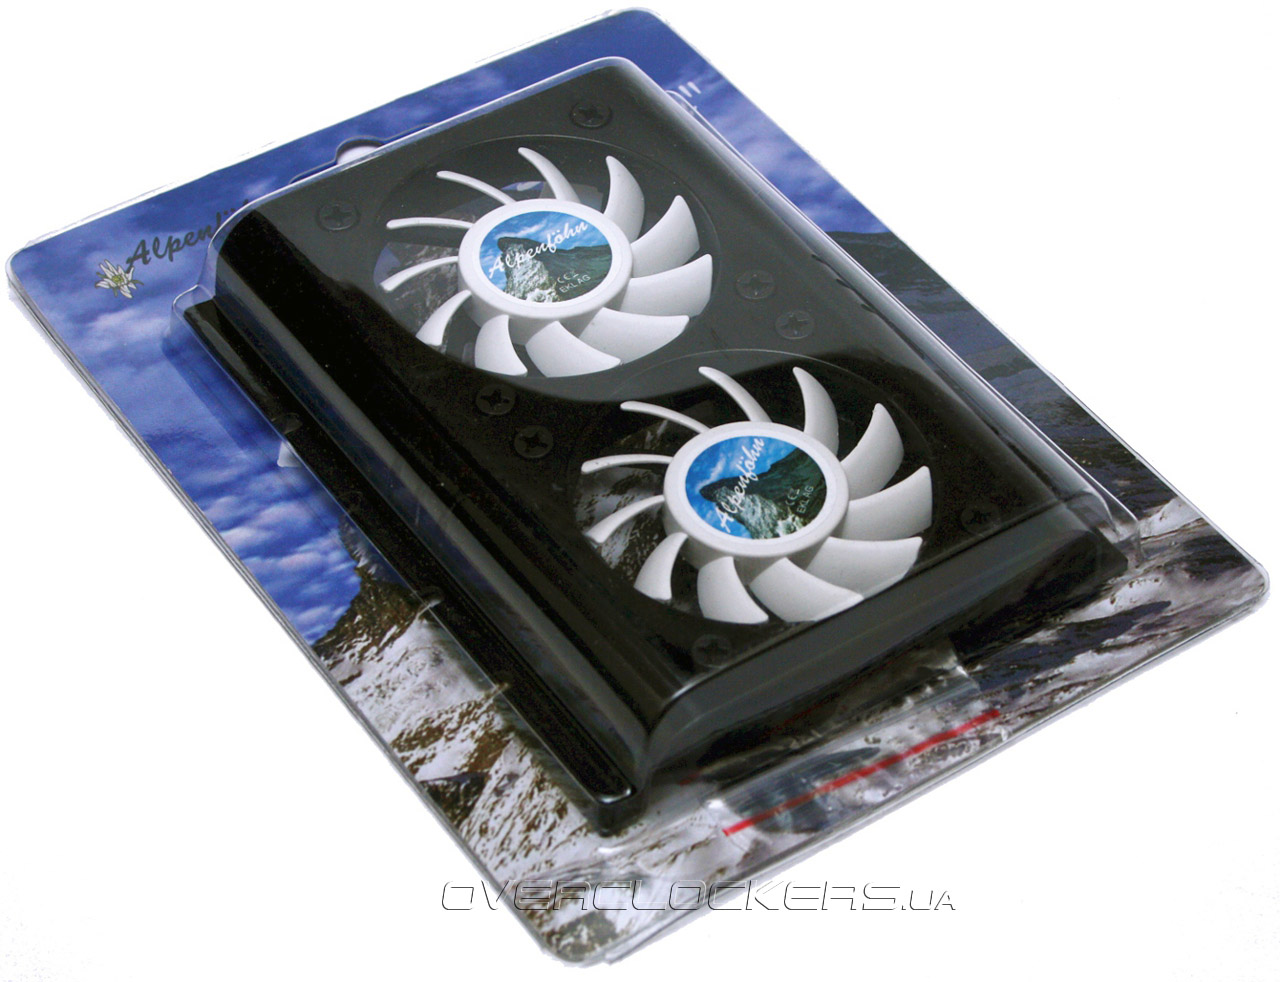 Охлаждение для SSD и HDD | Производитель низкопрофильных вентиляторов для охлаждения ЦП | EVERCOOL